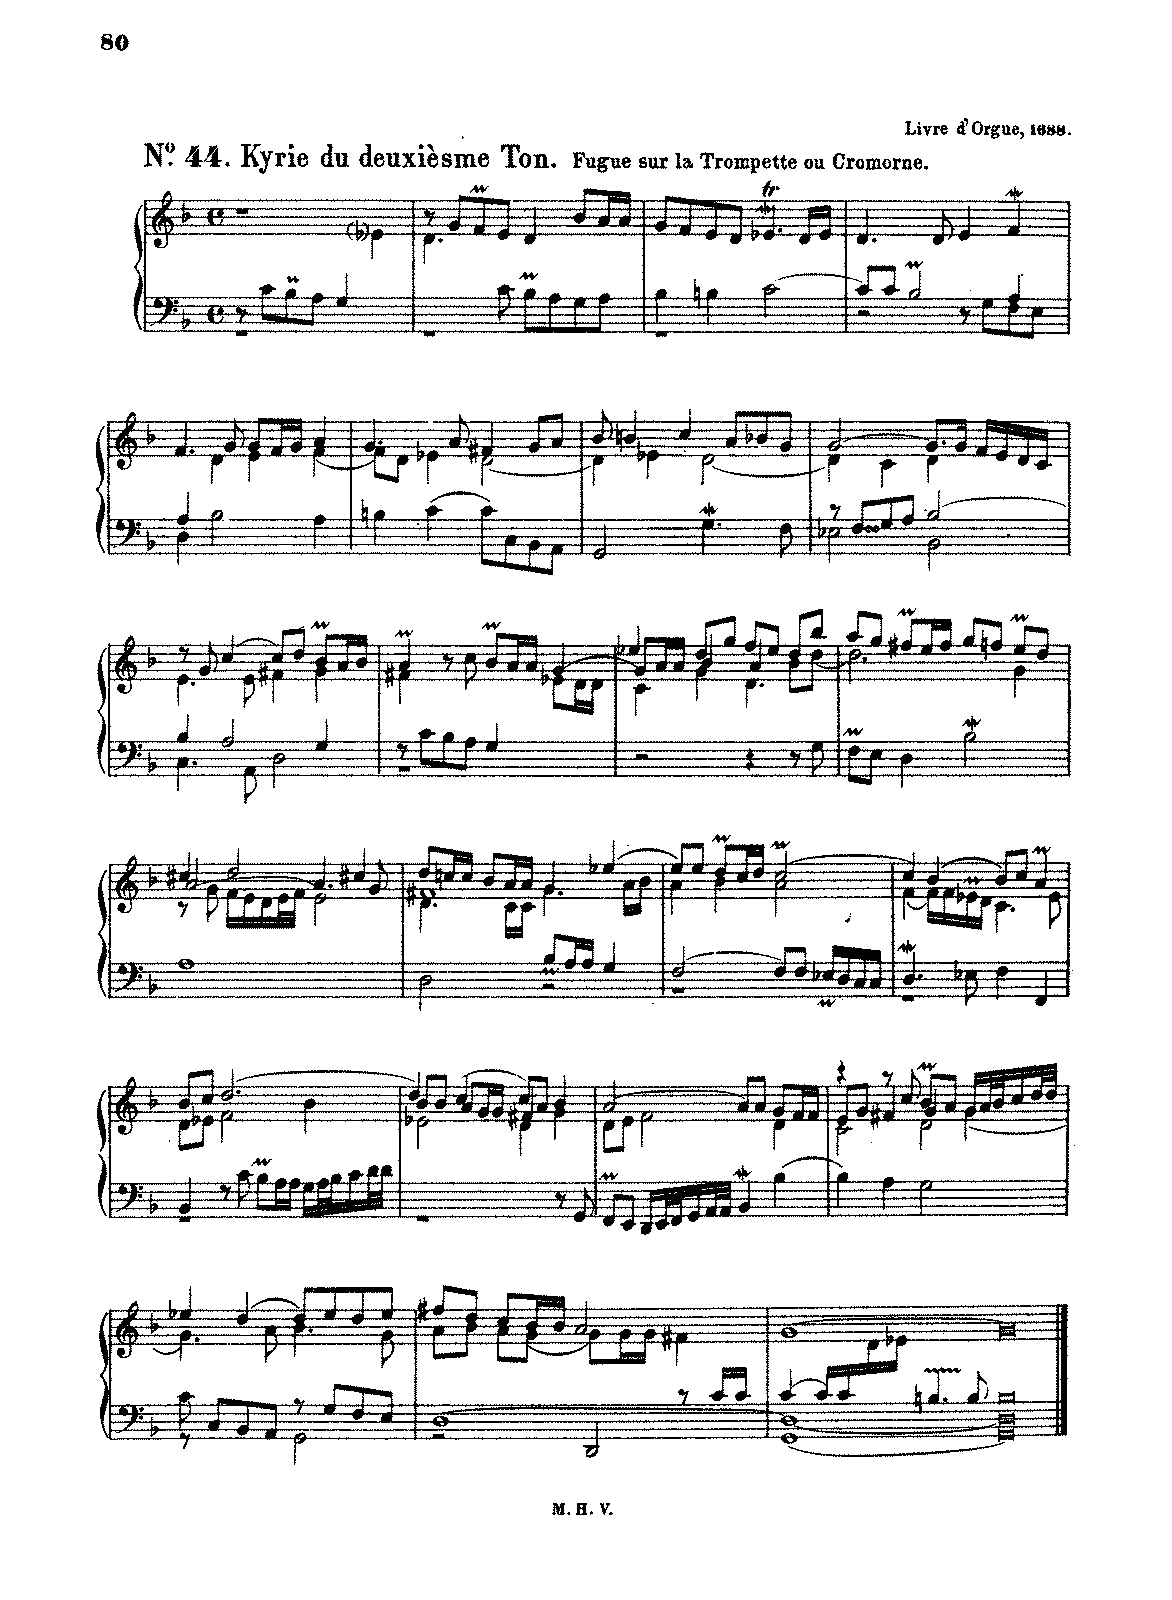 Livre d'orgue (Raison, André) - IMSLP